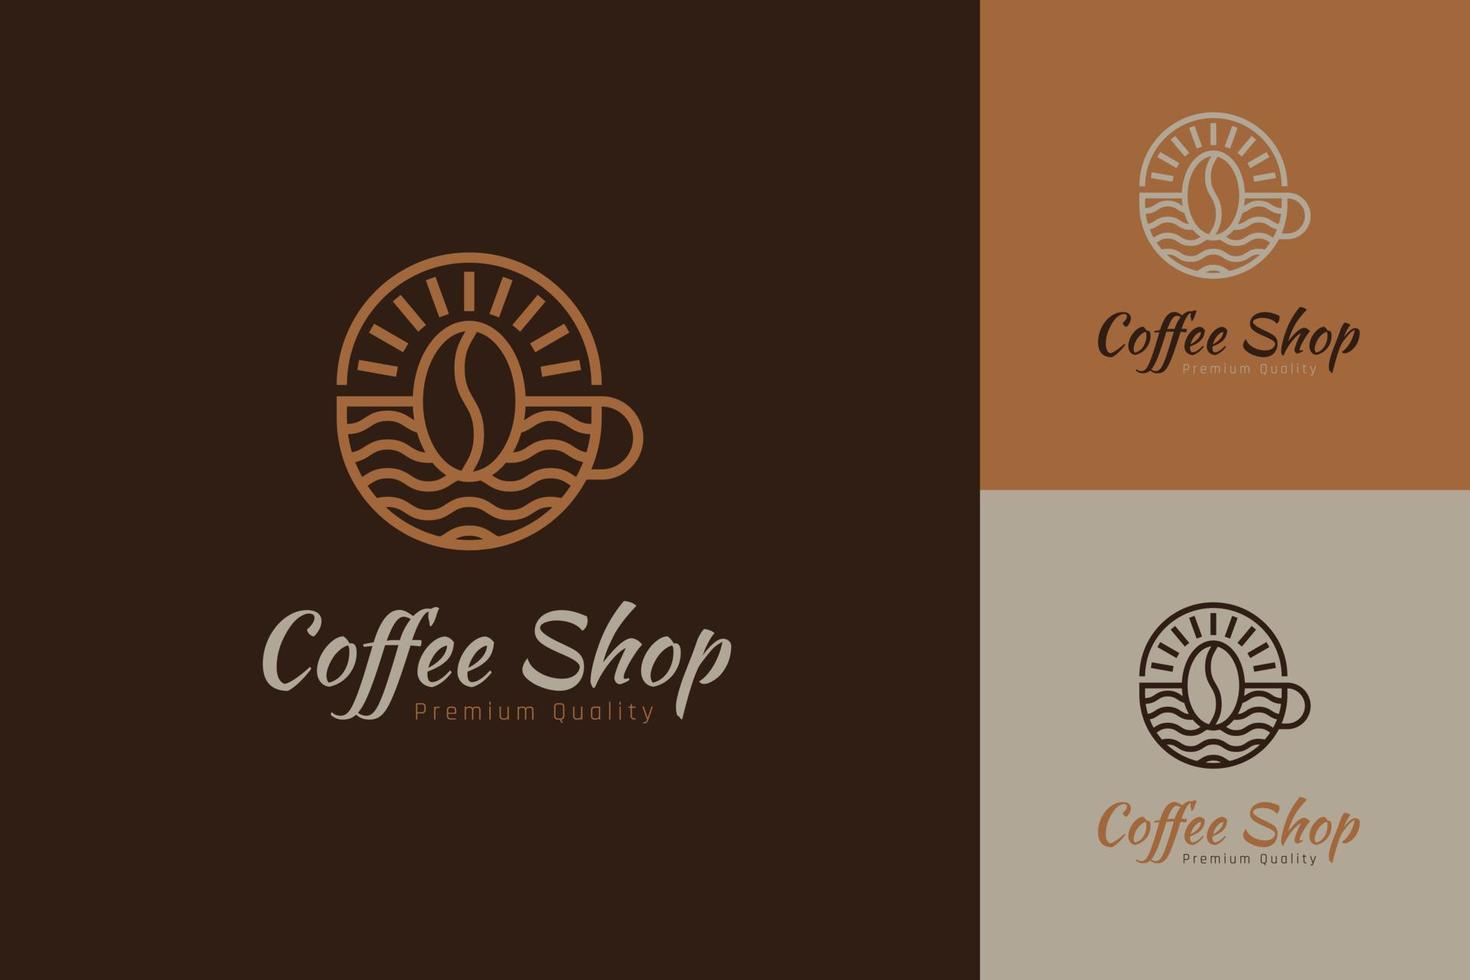 conjunto de plantillas de diseño vectorial del logotipo de la cafetería con diferentes estilos de color vector